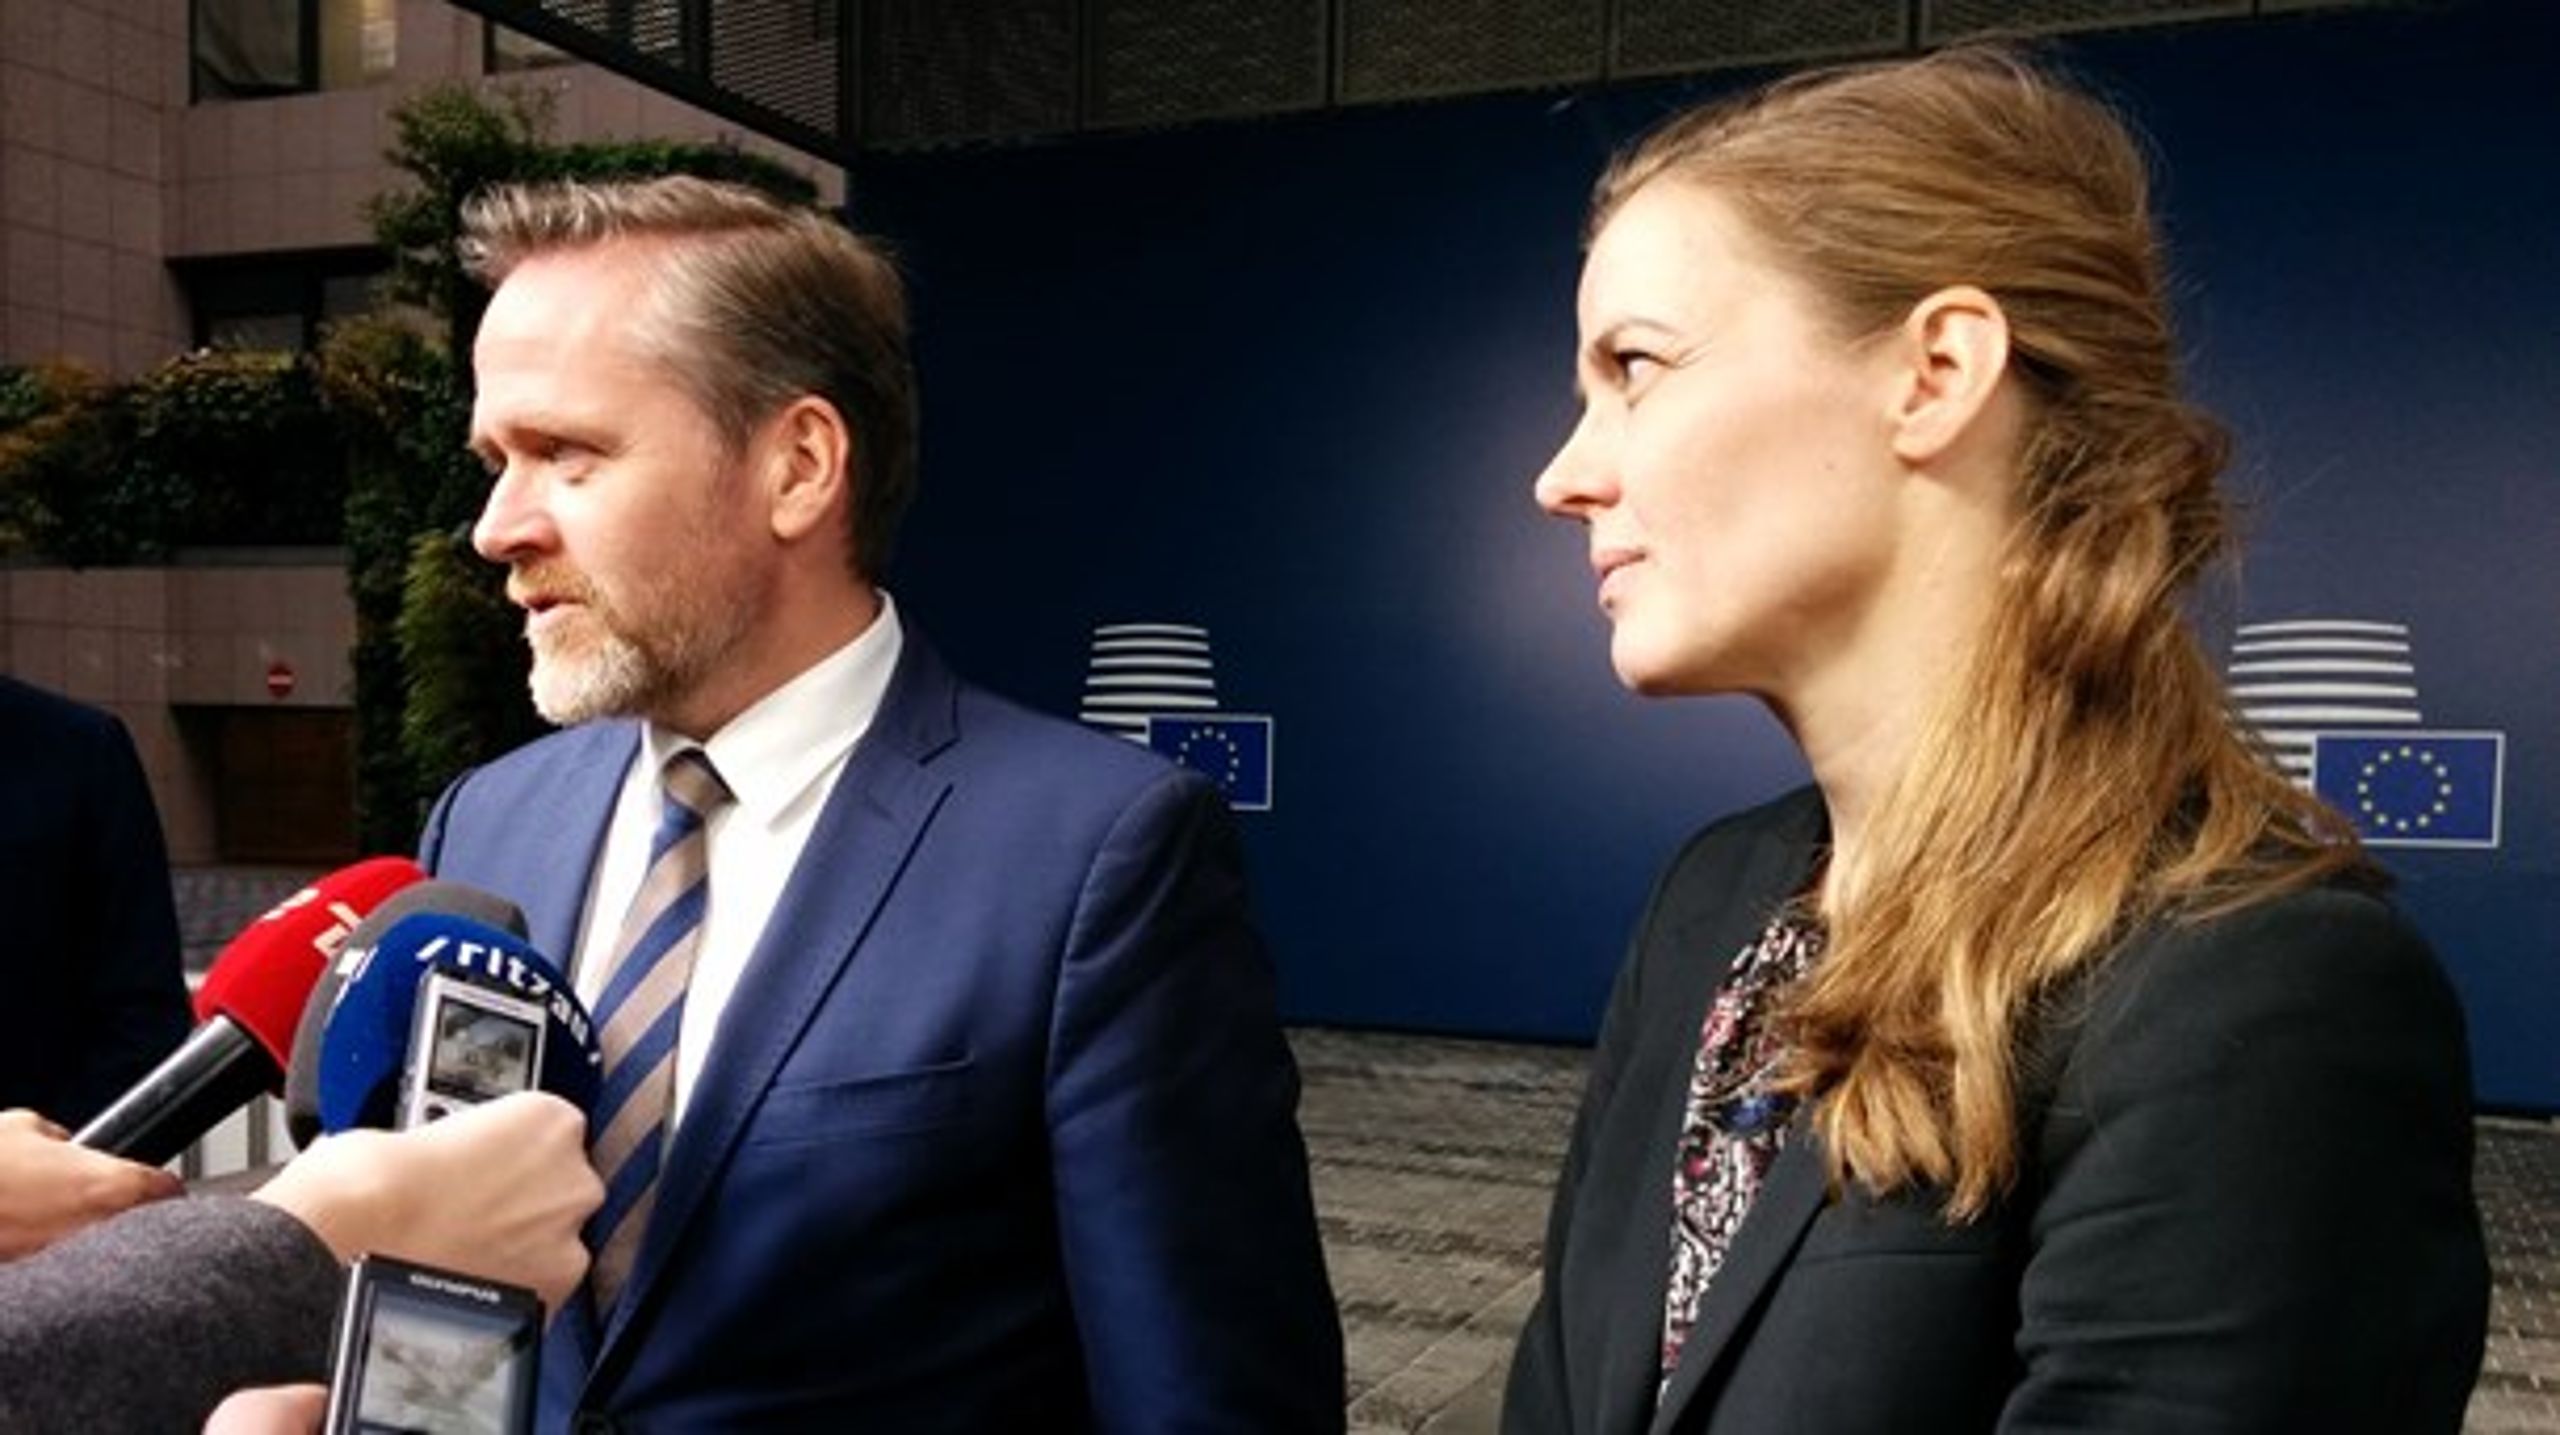 Danmark vil kæmpe til det sidste for at overbevise de øvrige EU-medlemslande om at stemme på det danske bud til en ny placering af det europæiske lægemiddelagentur, når det flytter fra London som følge af Brexit, lyder det fra udenrigsministeren og sundhedsministeren.